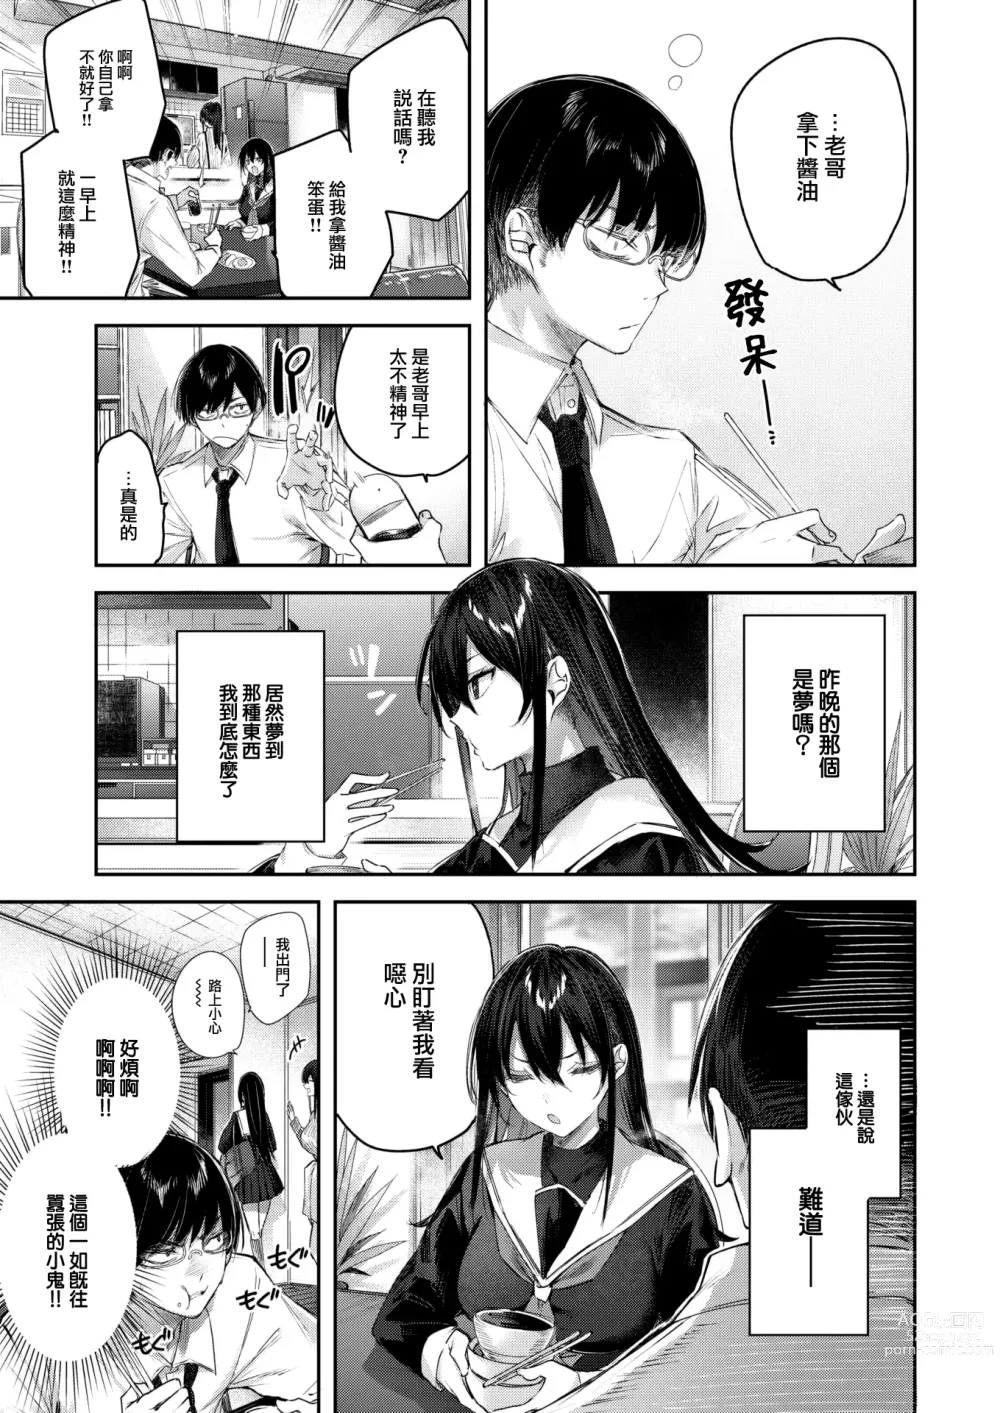 Page 6 of manga Imouto Pudding